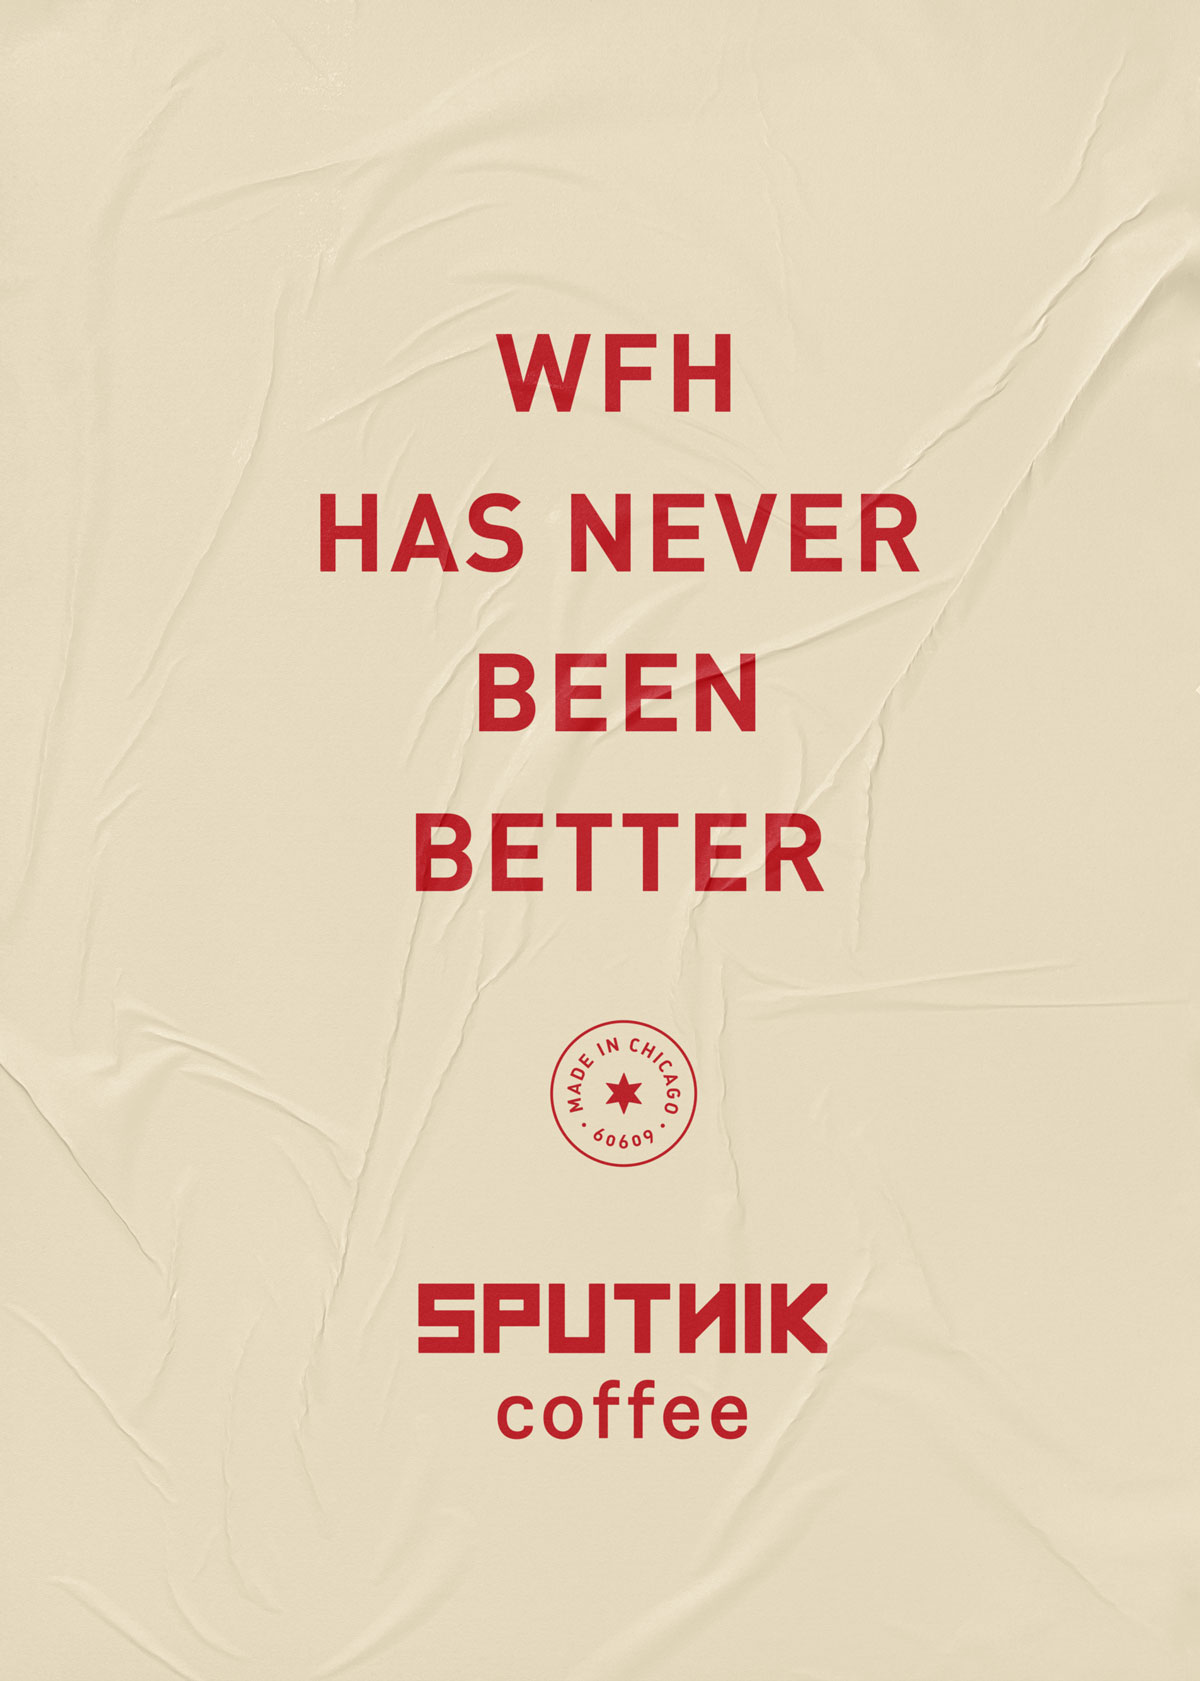 Sputnik-Glued-Poster-04